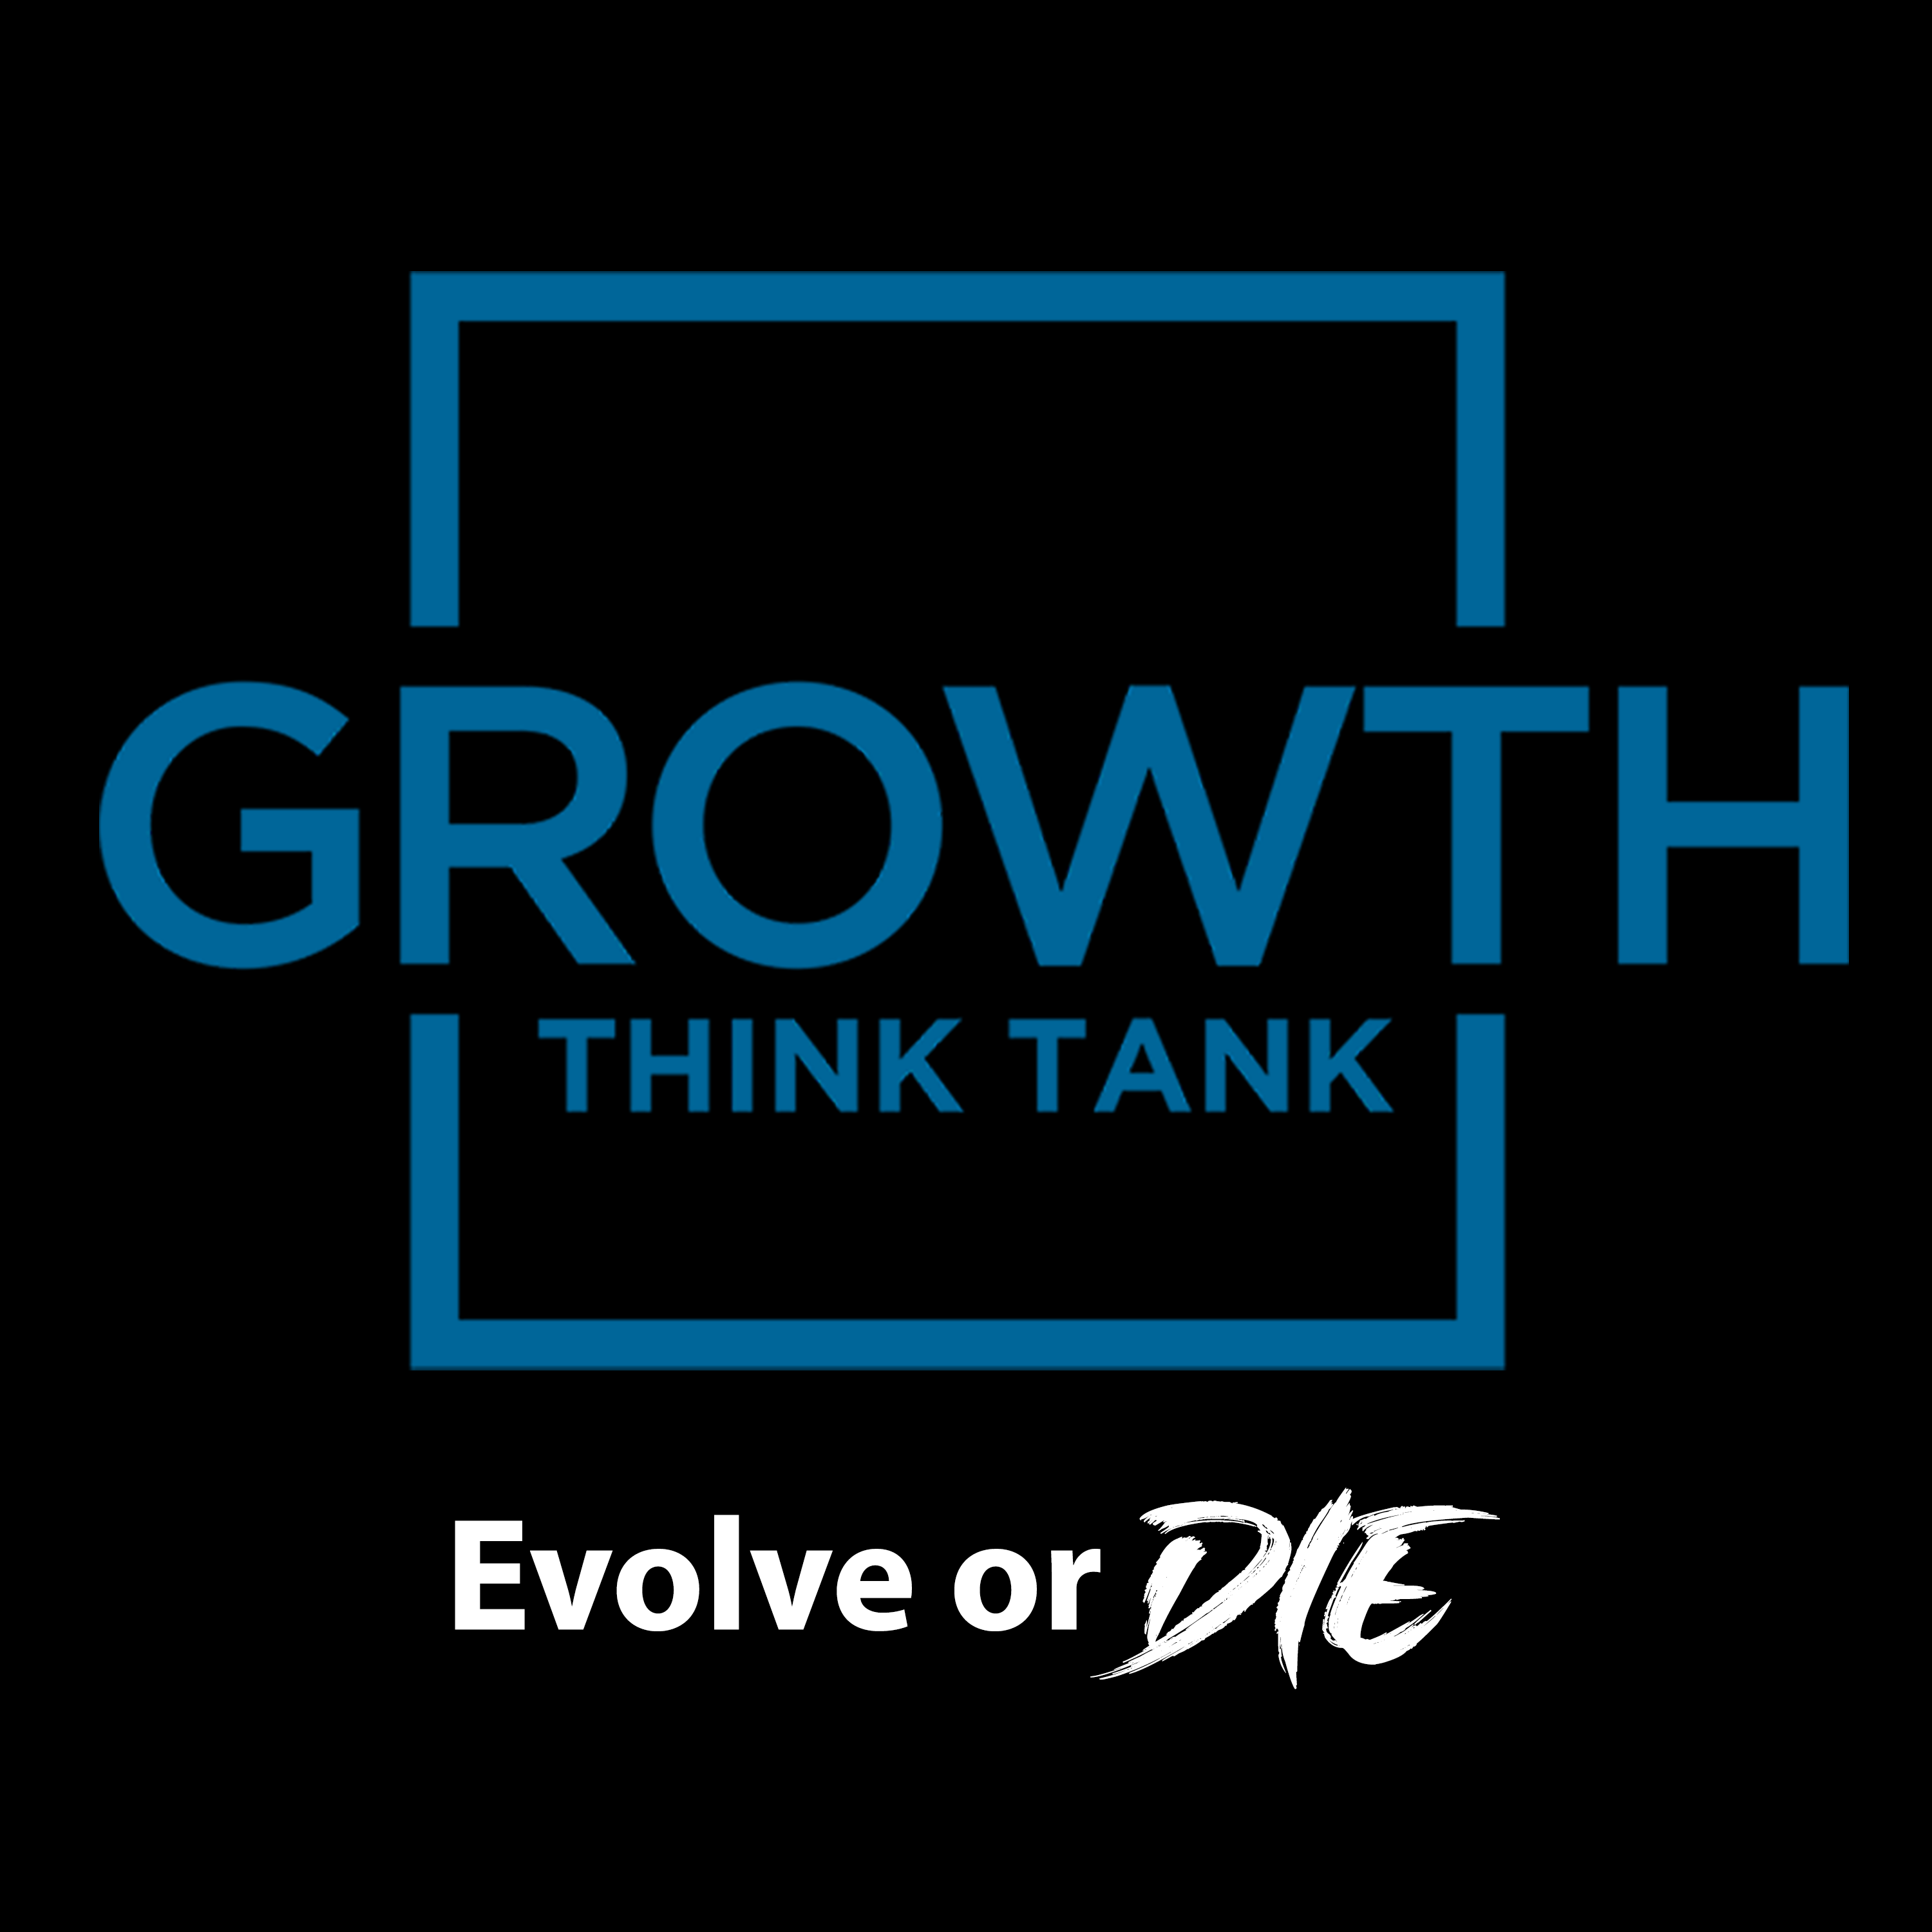 Growth Think Tank (fka 